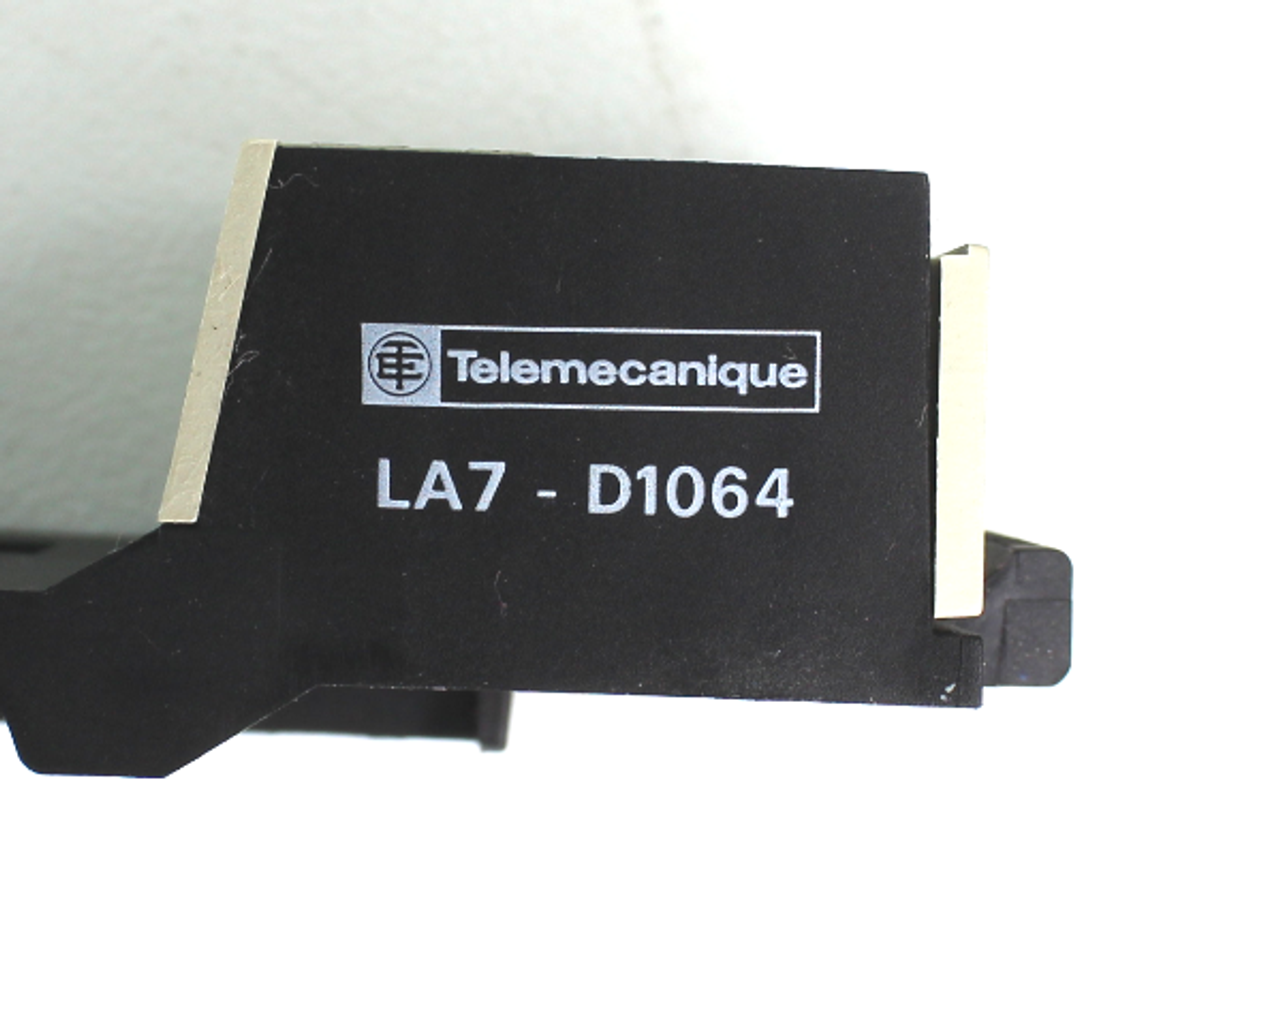 Telemecanique LA7-D1064 Aux. Contact Mount DIN Rail